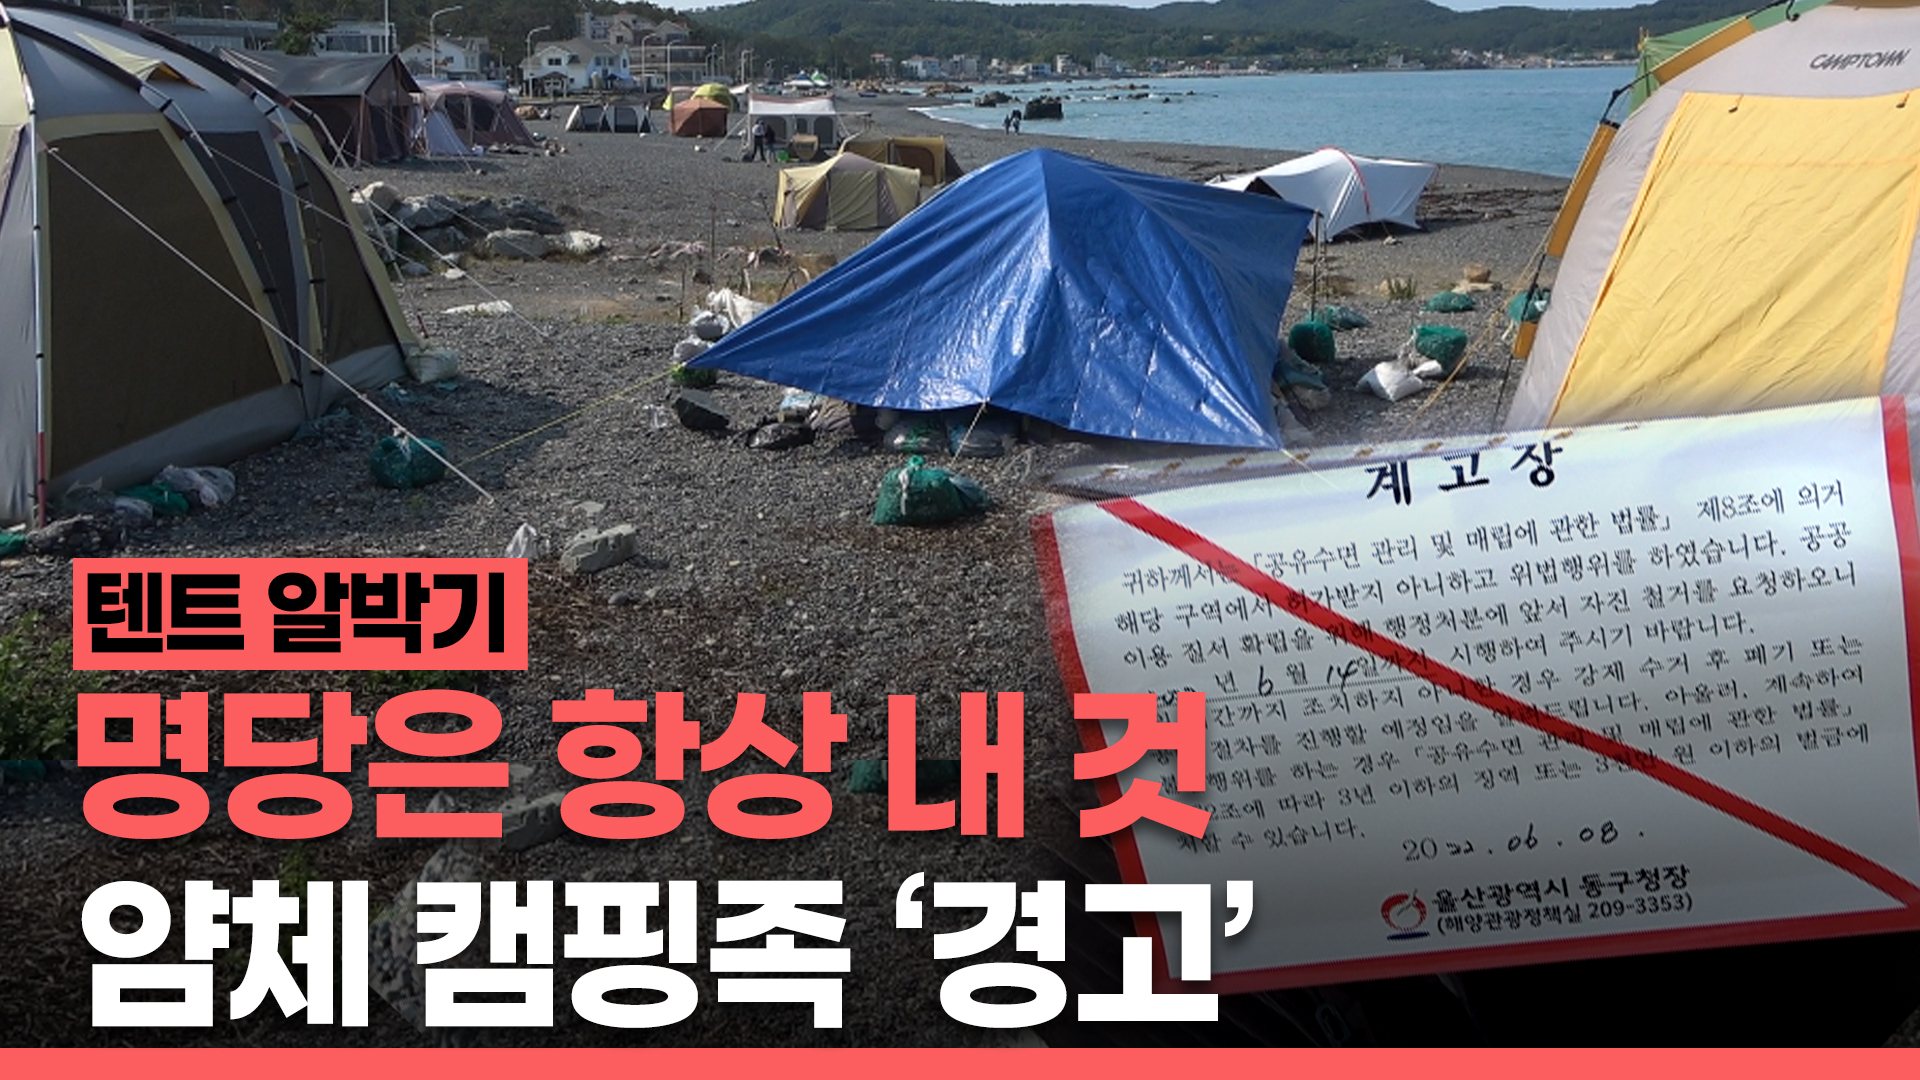  명당 자리 차지한 알박기 텐트, 얌체 캠핑족 '경고'